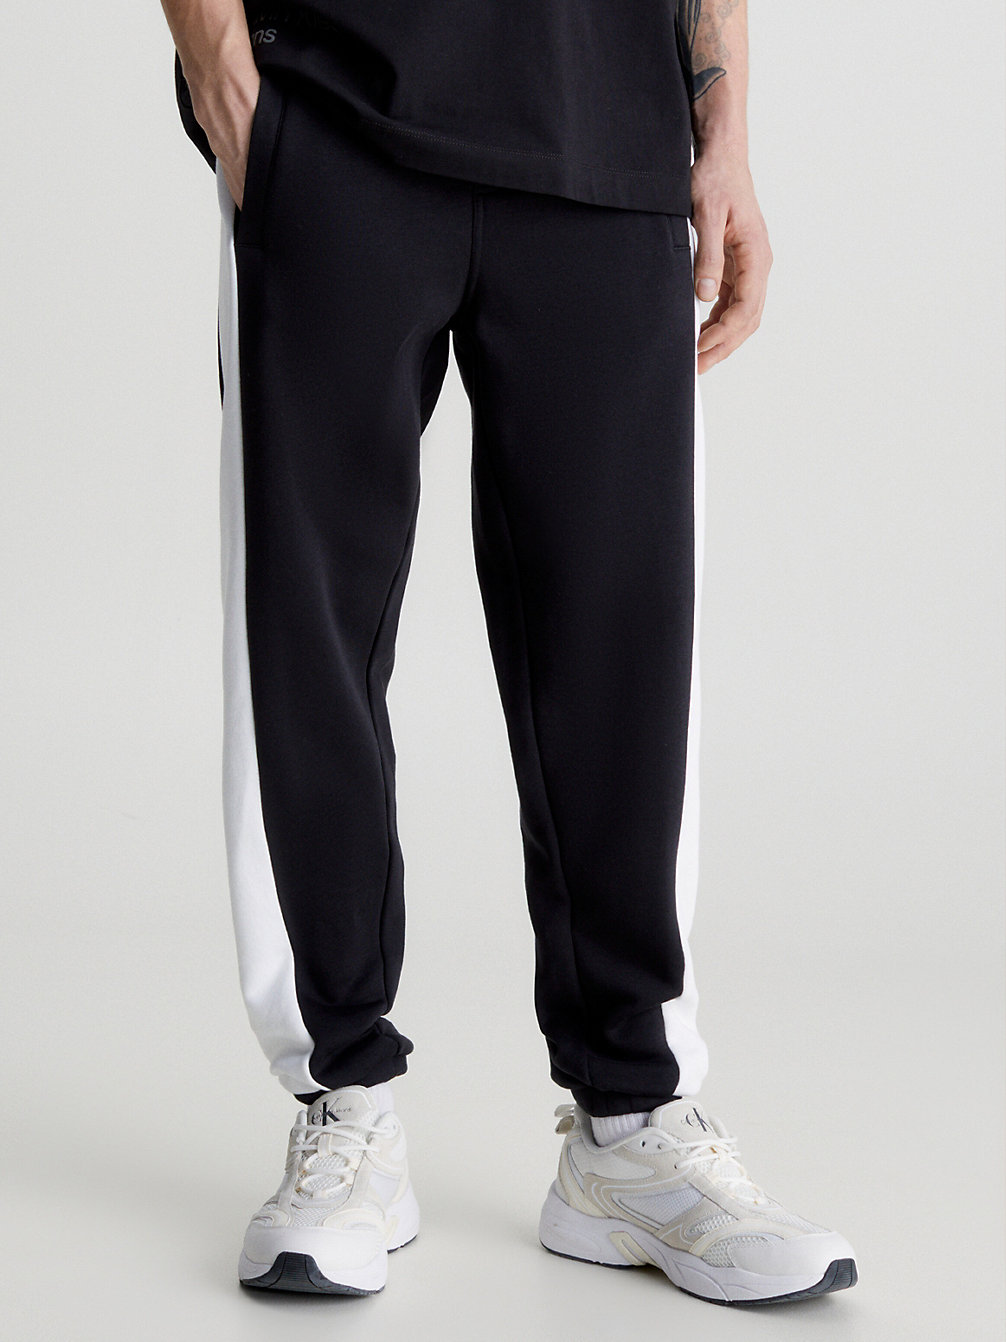 CK BLACK > Spodnie Dresowe W Kontrastowych Kolorach > undefined Mężczyźni - Calvin Klein